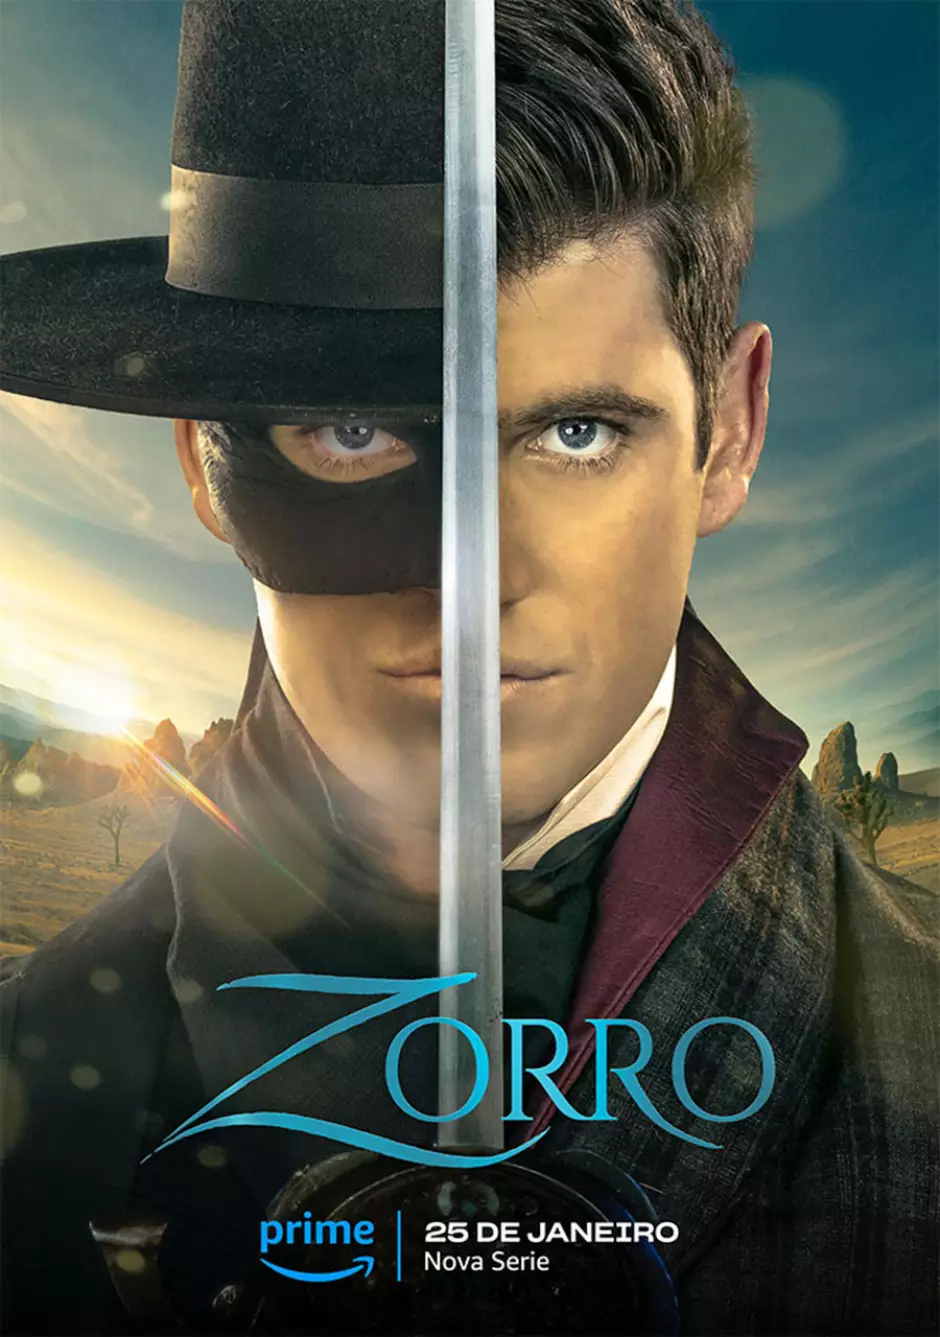 O Zorro